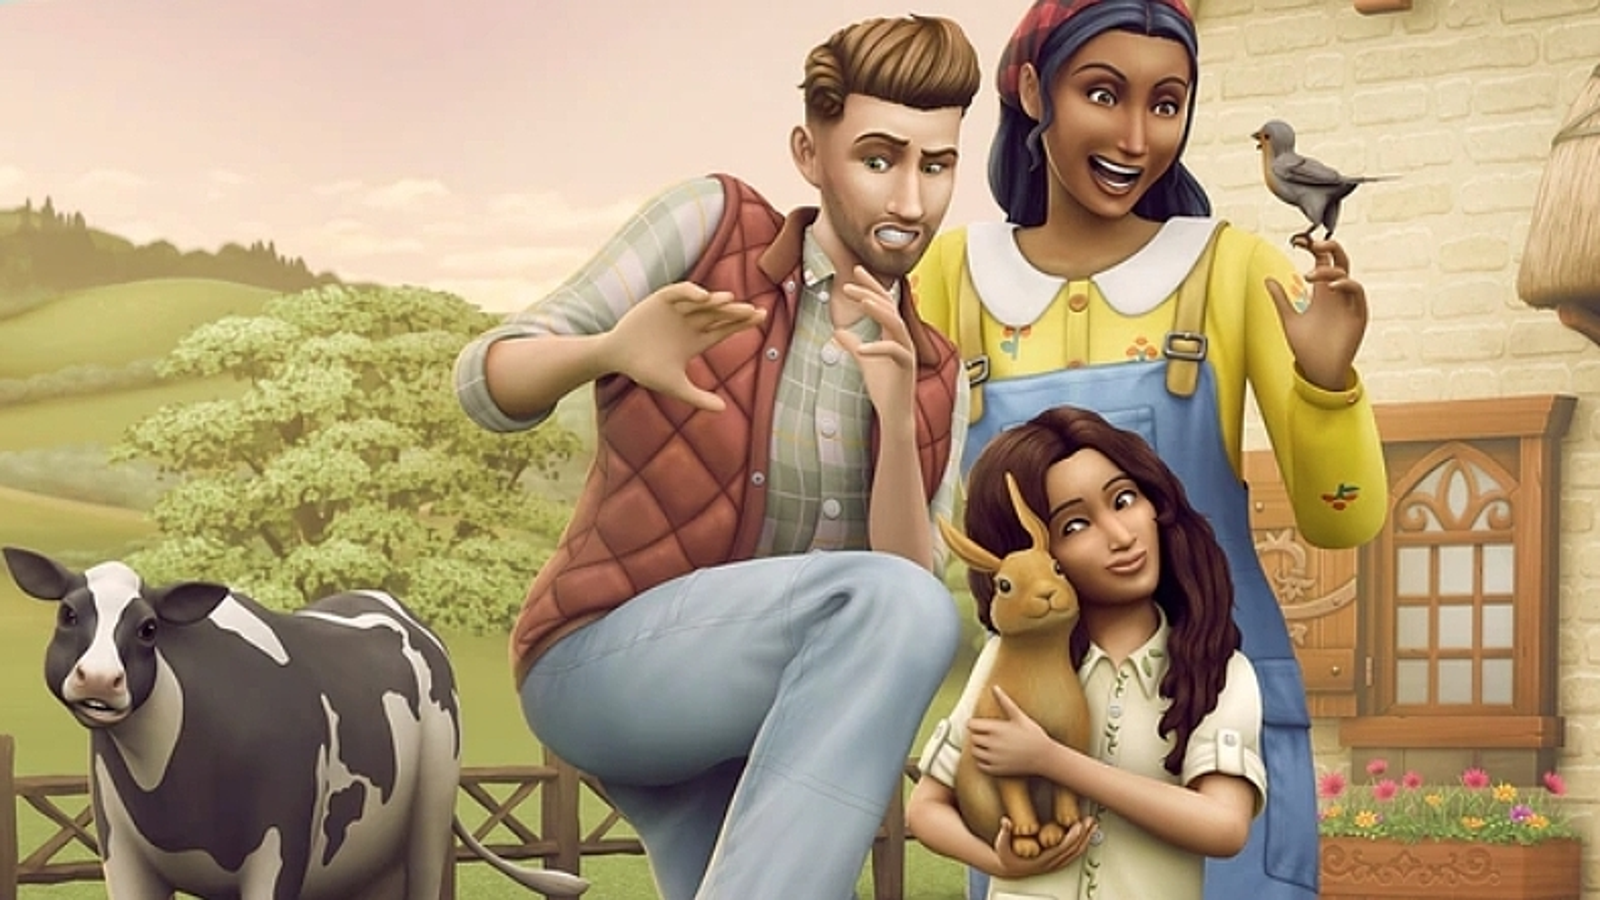 The Sims 4 Rental Houses poderá ser a Nova Expansão!